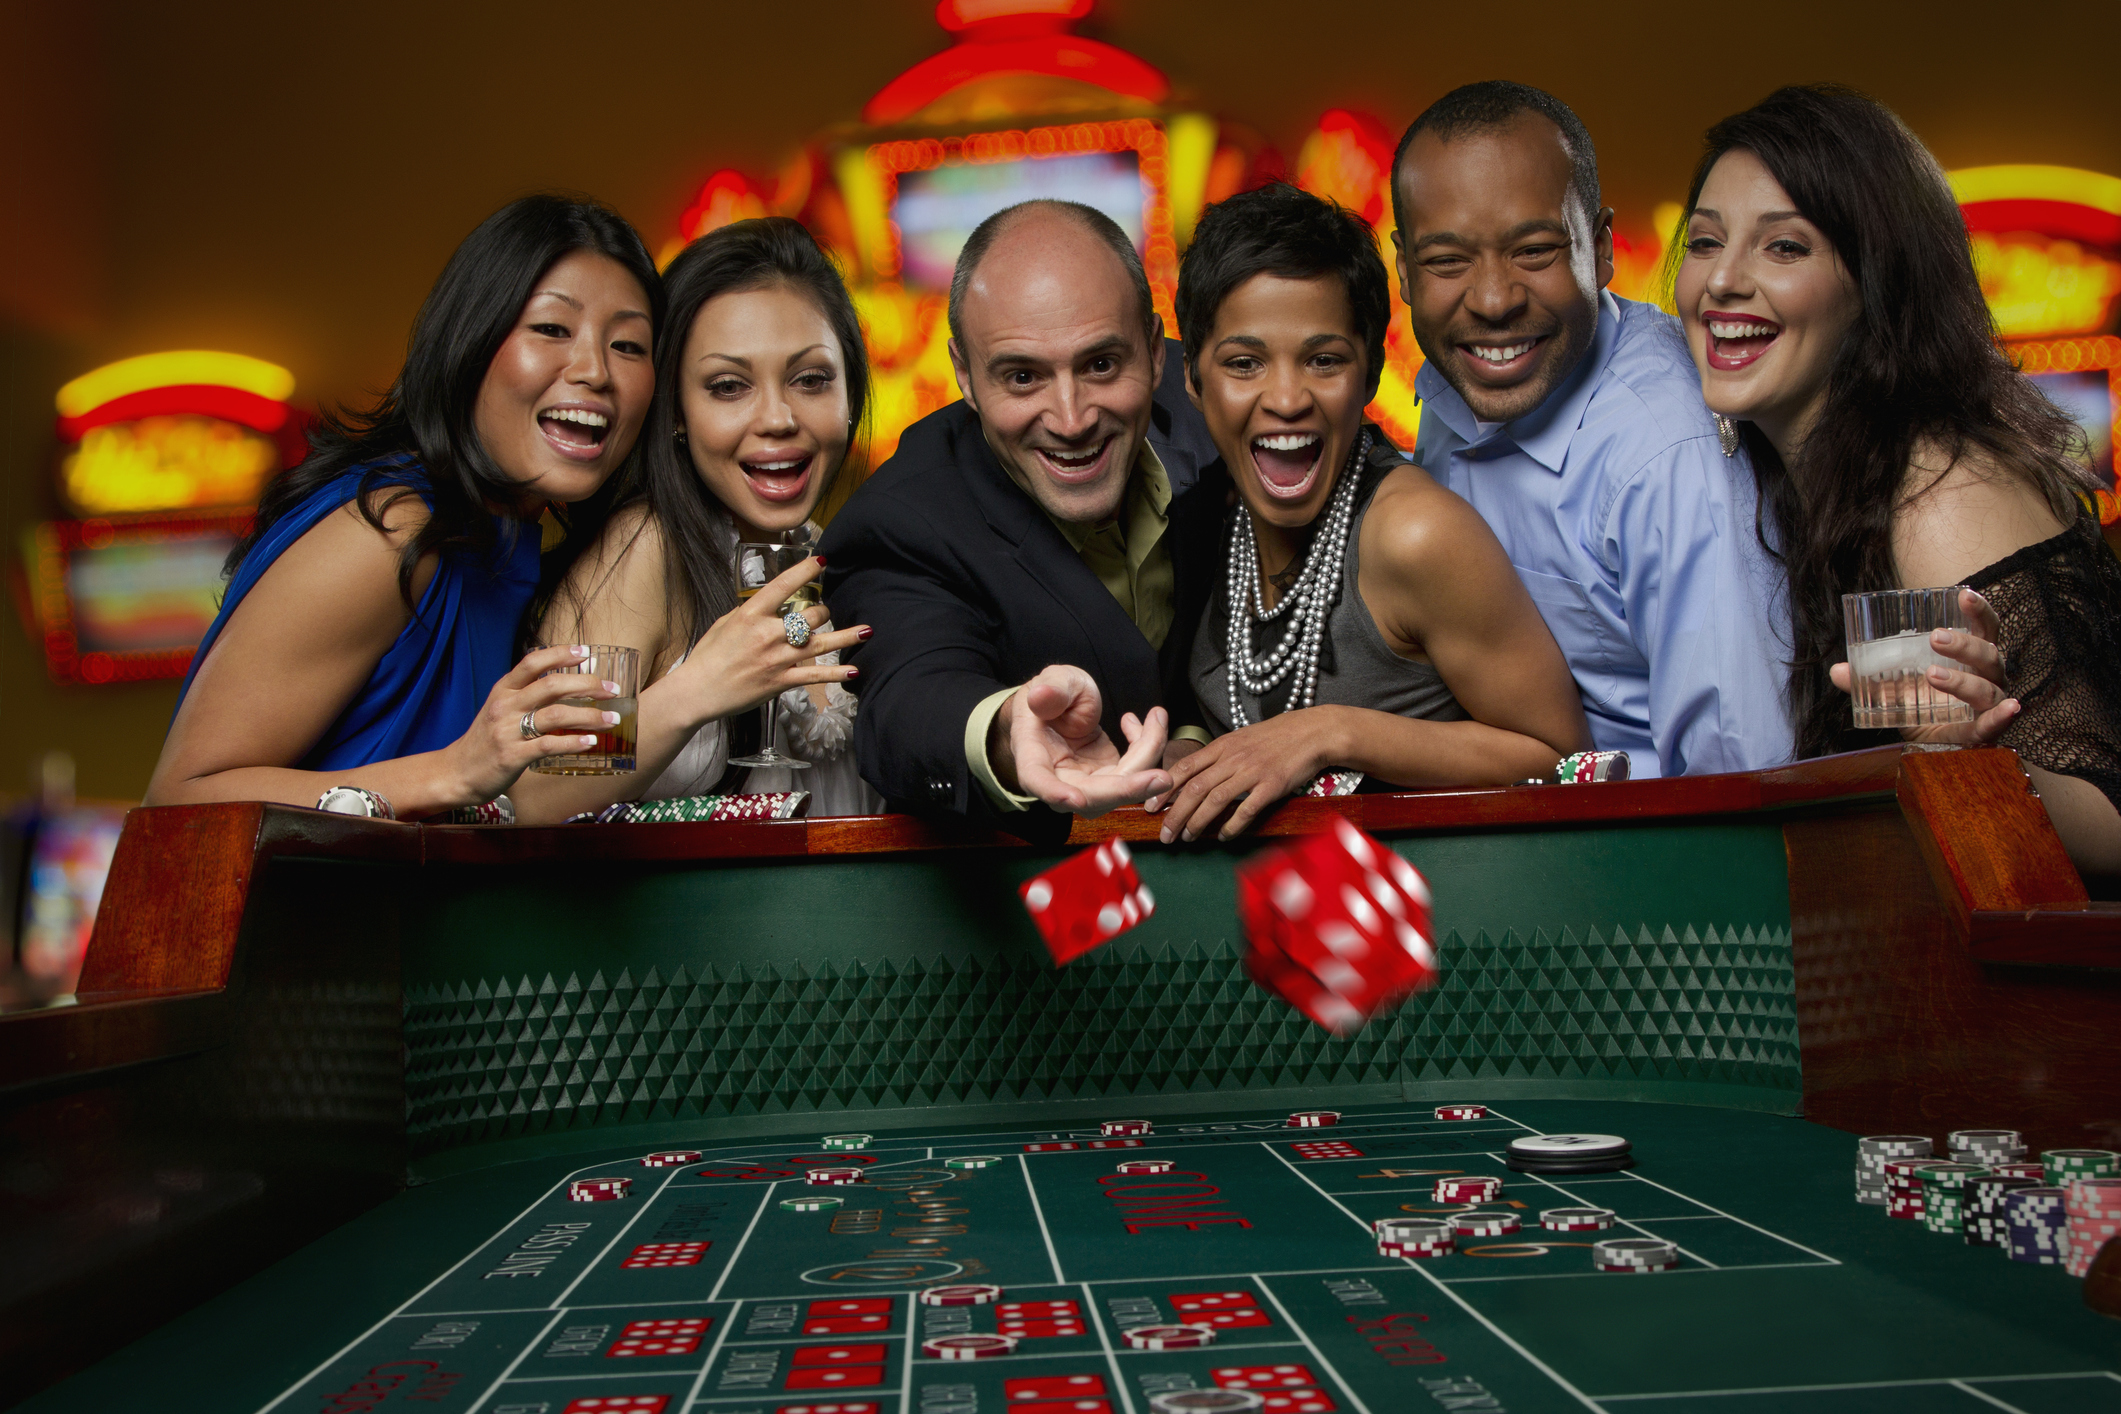 gambling at craps table in casino